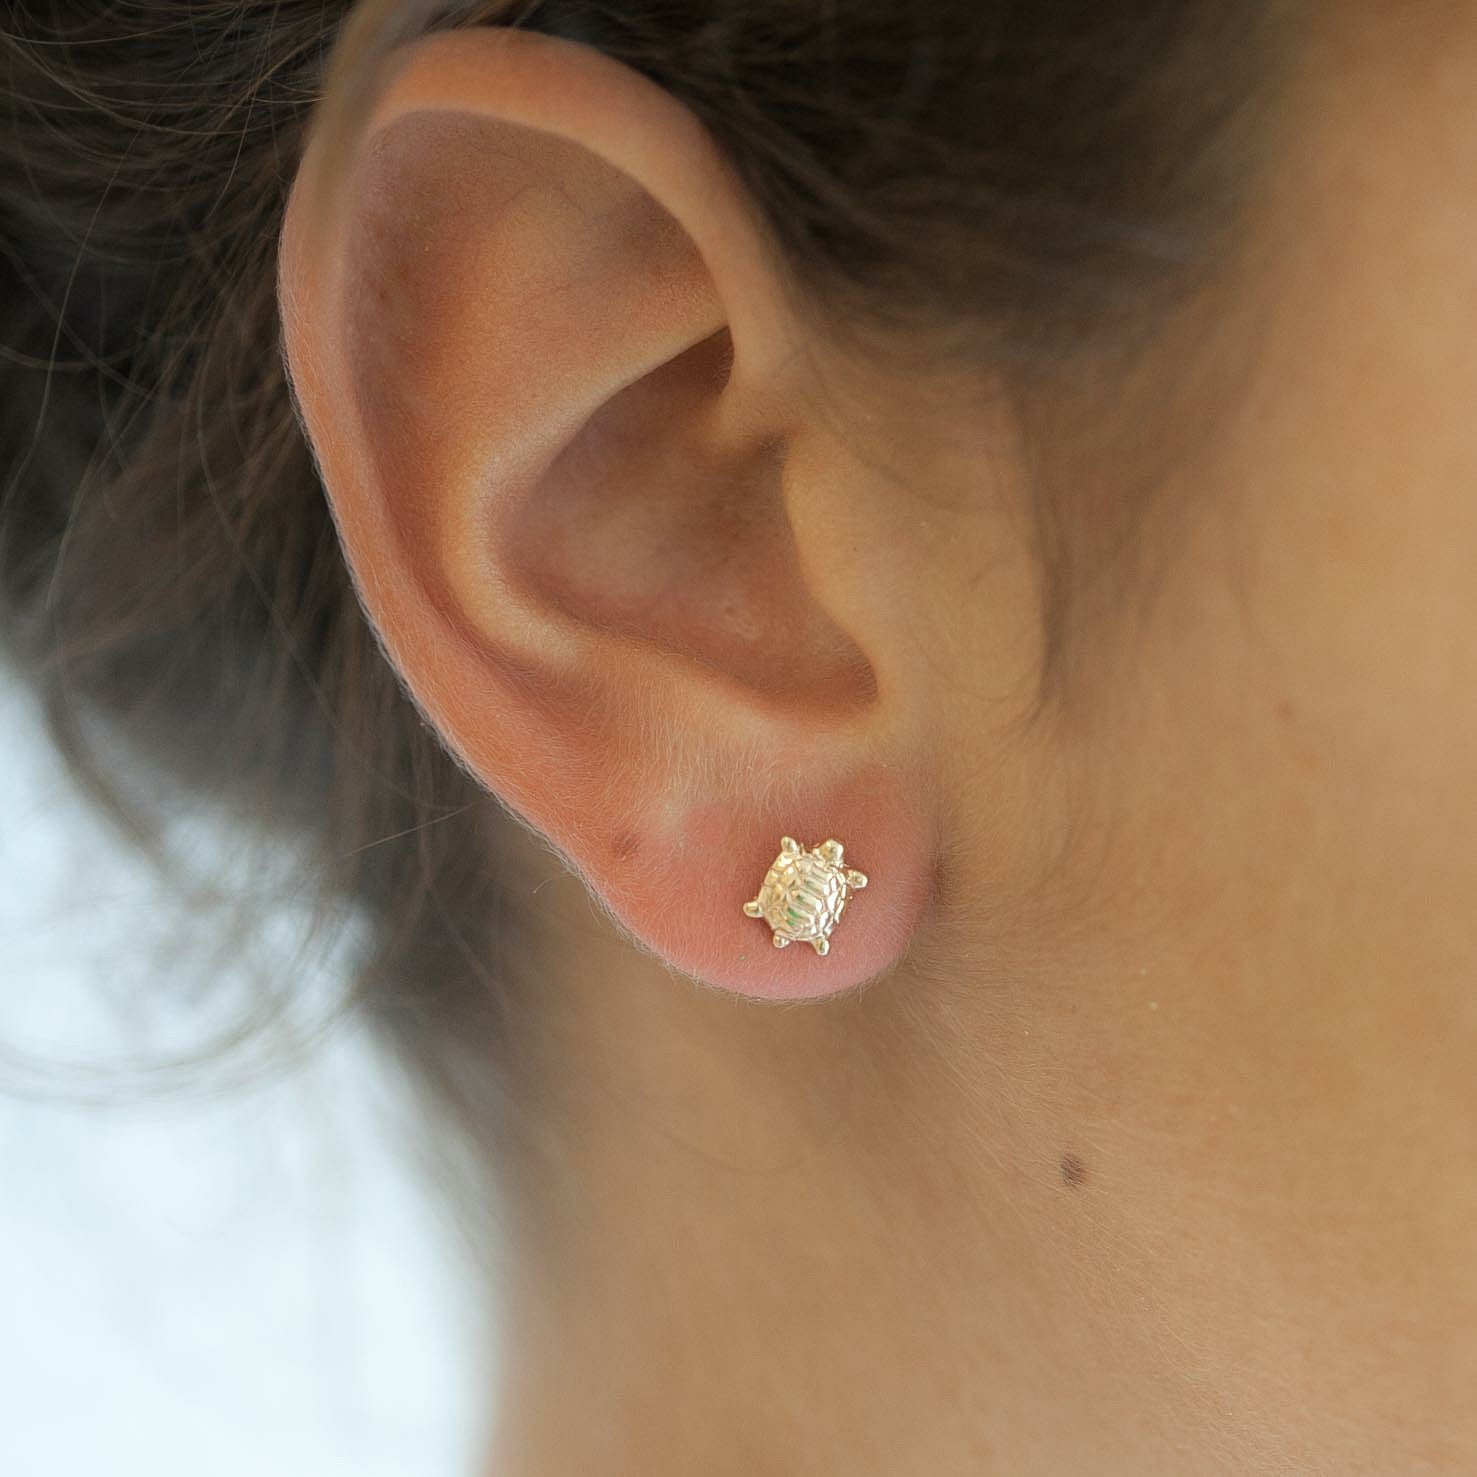 BALCANO - Turtle / Boucles d'oreilles Tortue type perceuse avec zirconium  plaqué or rose 18K ¤ Boutique en ligne BALCANO